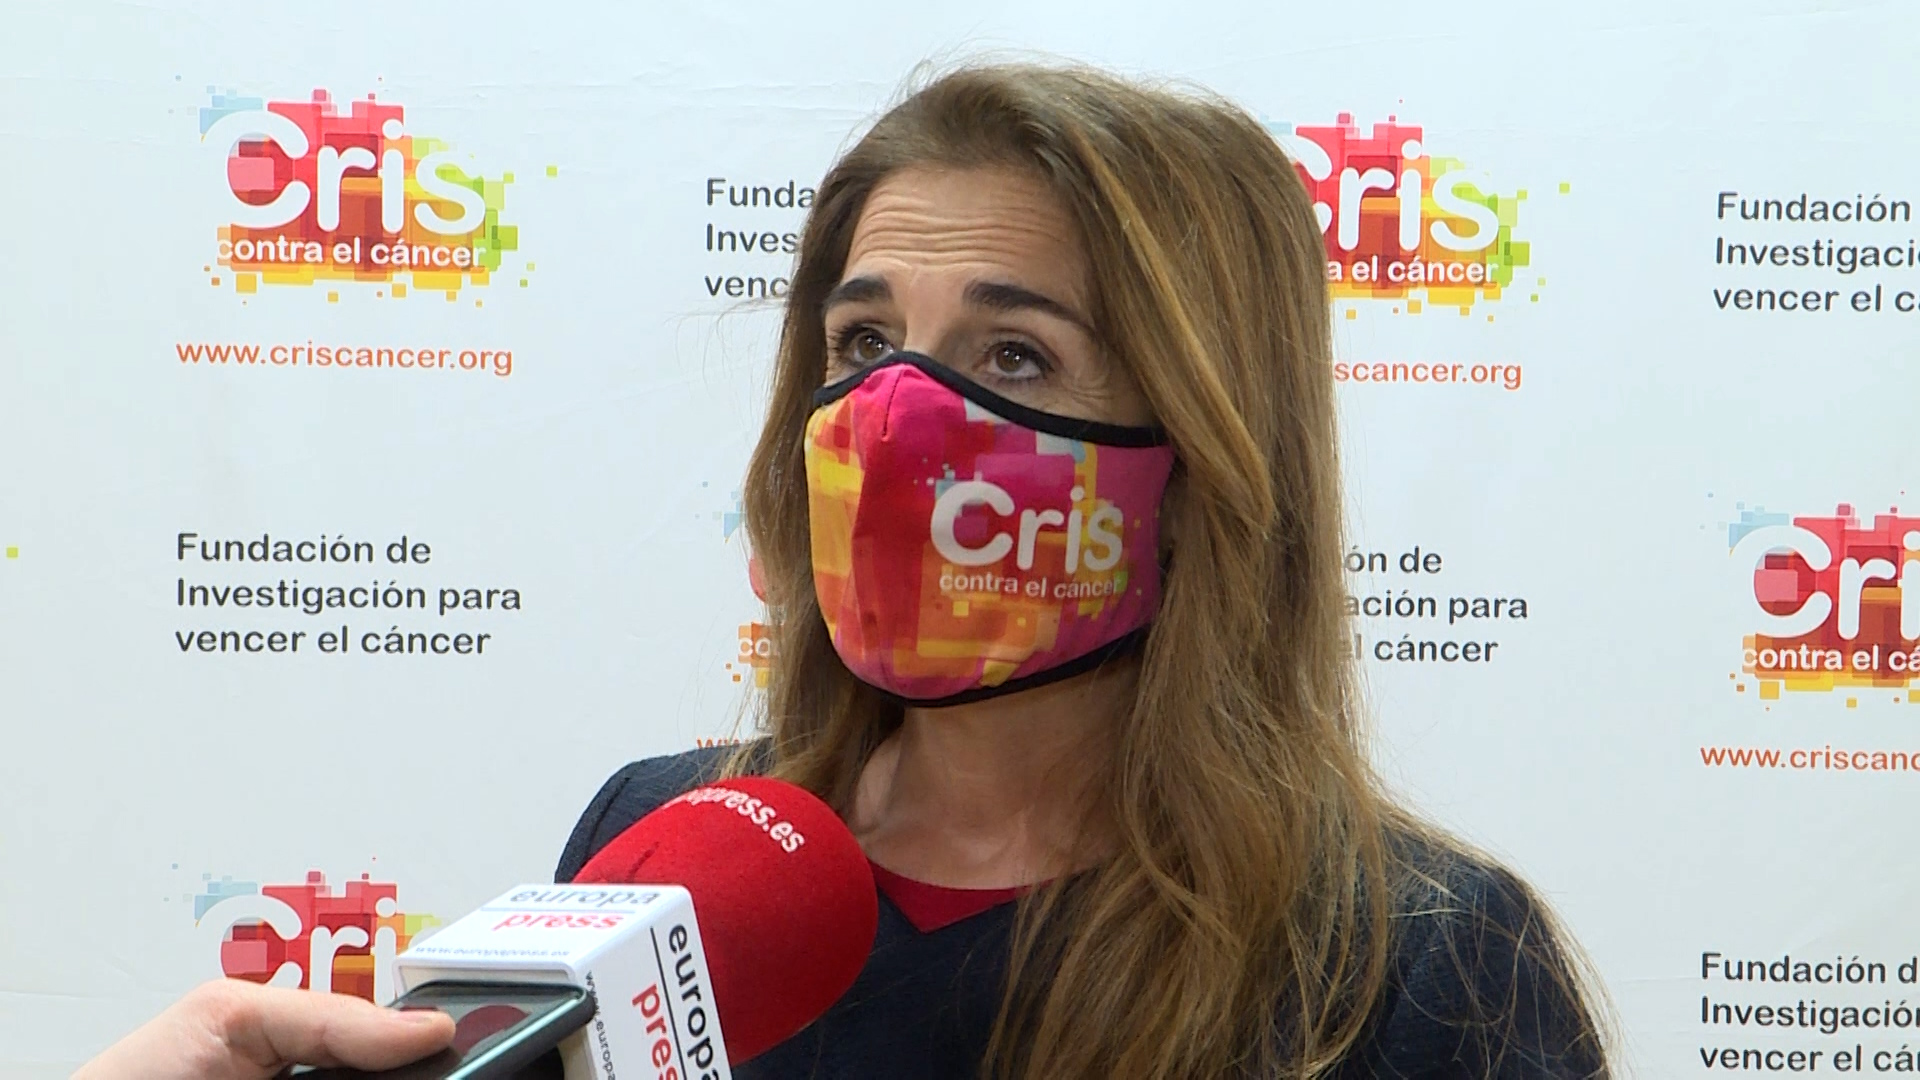 Vídeo: CRIS contra el cáncer pide más investigación para curar la enfermedad